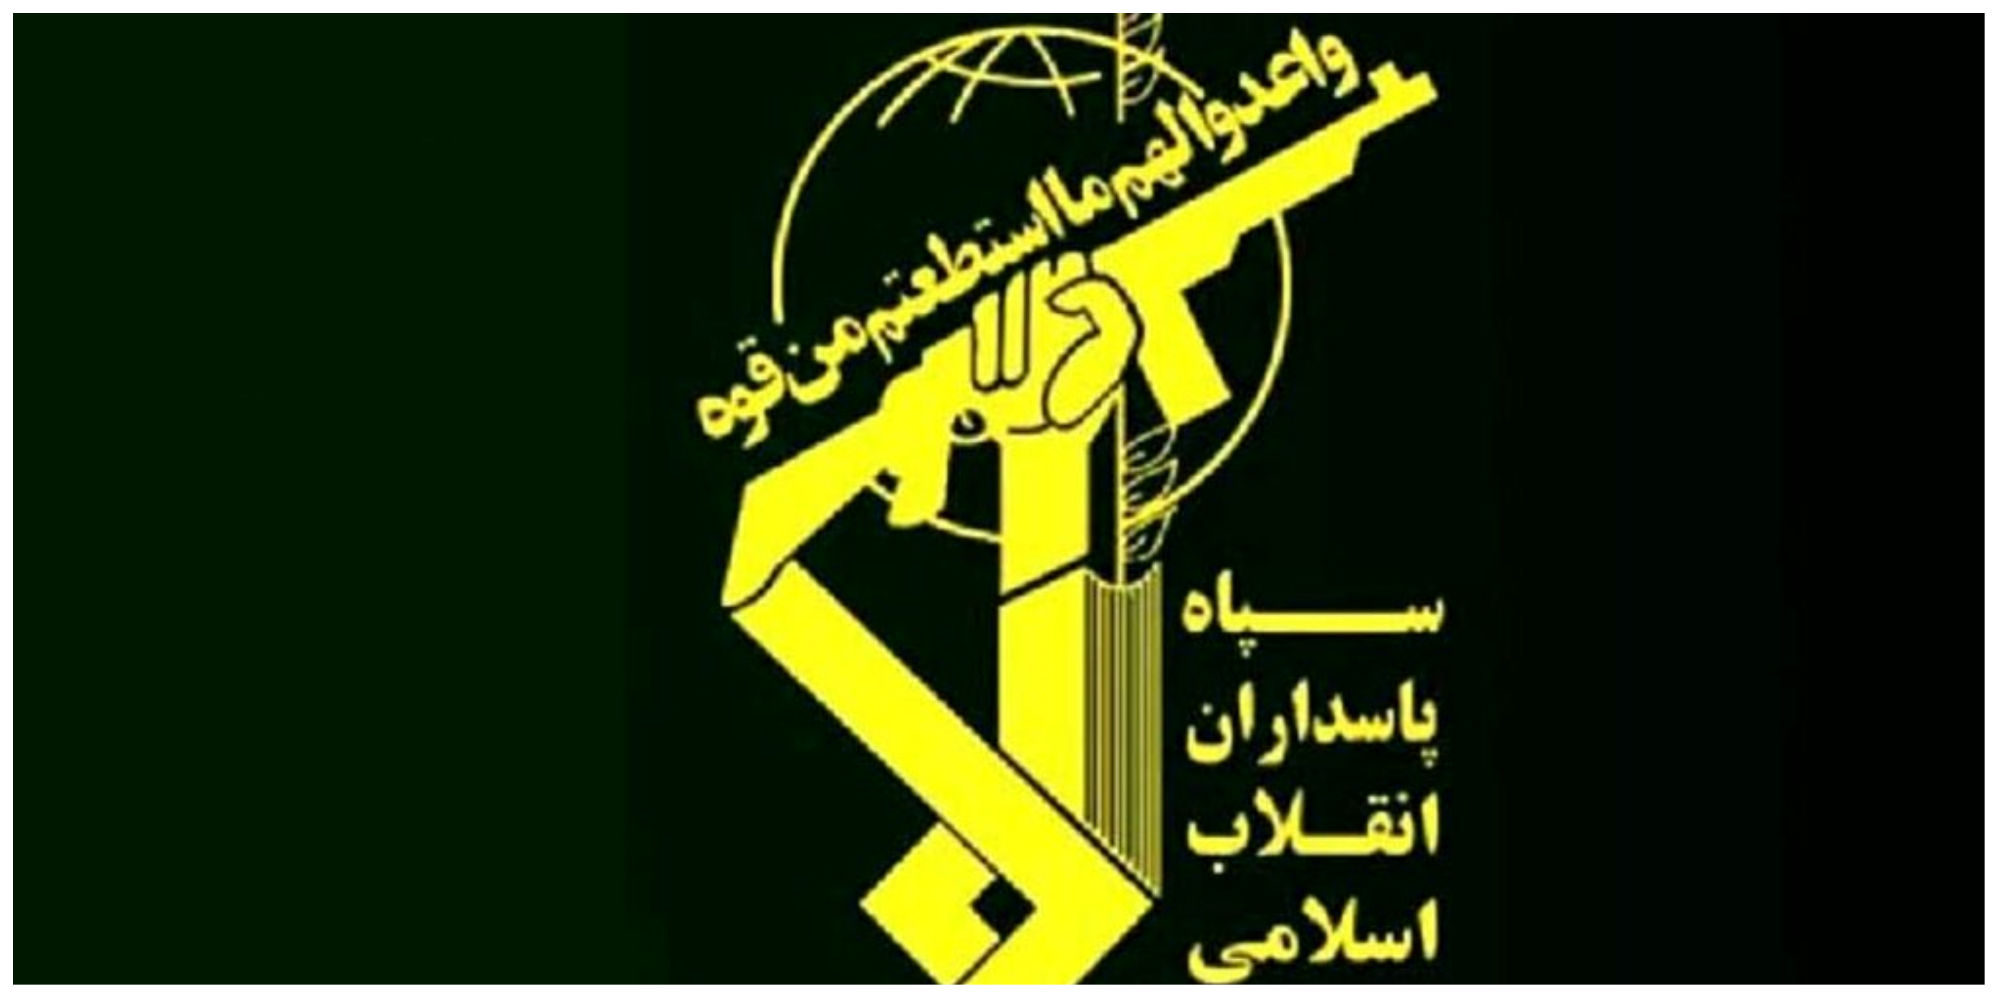 سپاه پاسداران انقلاب اسلامی بیانیه داد